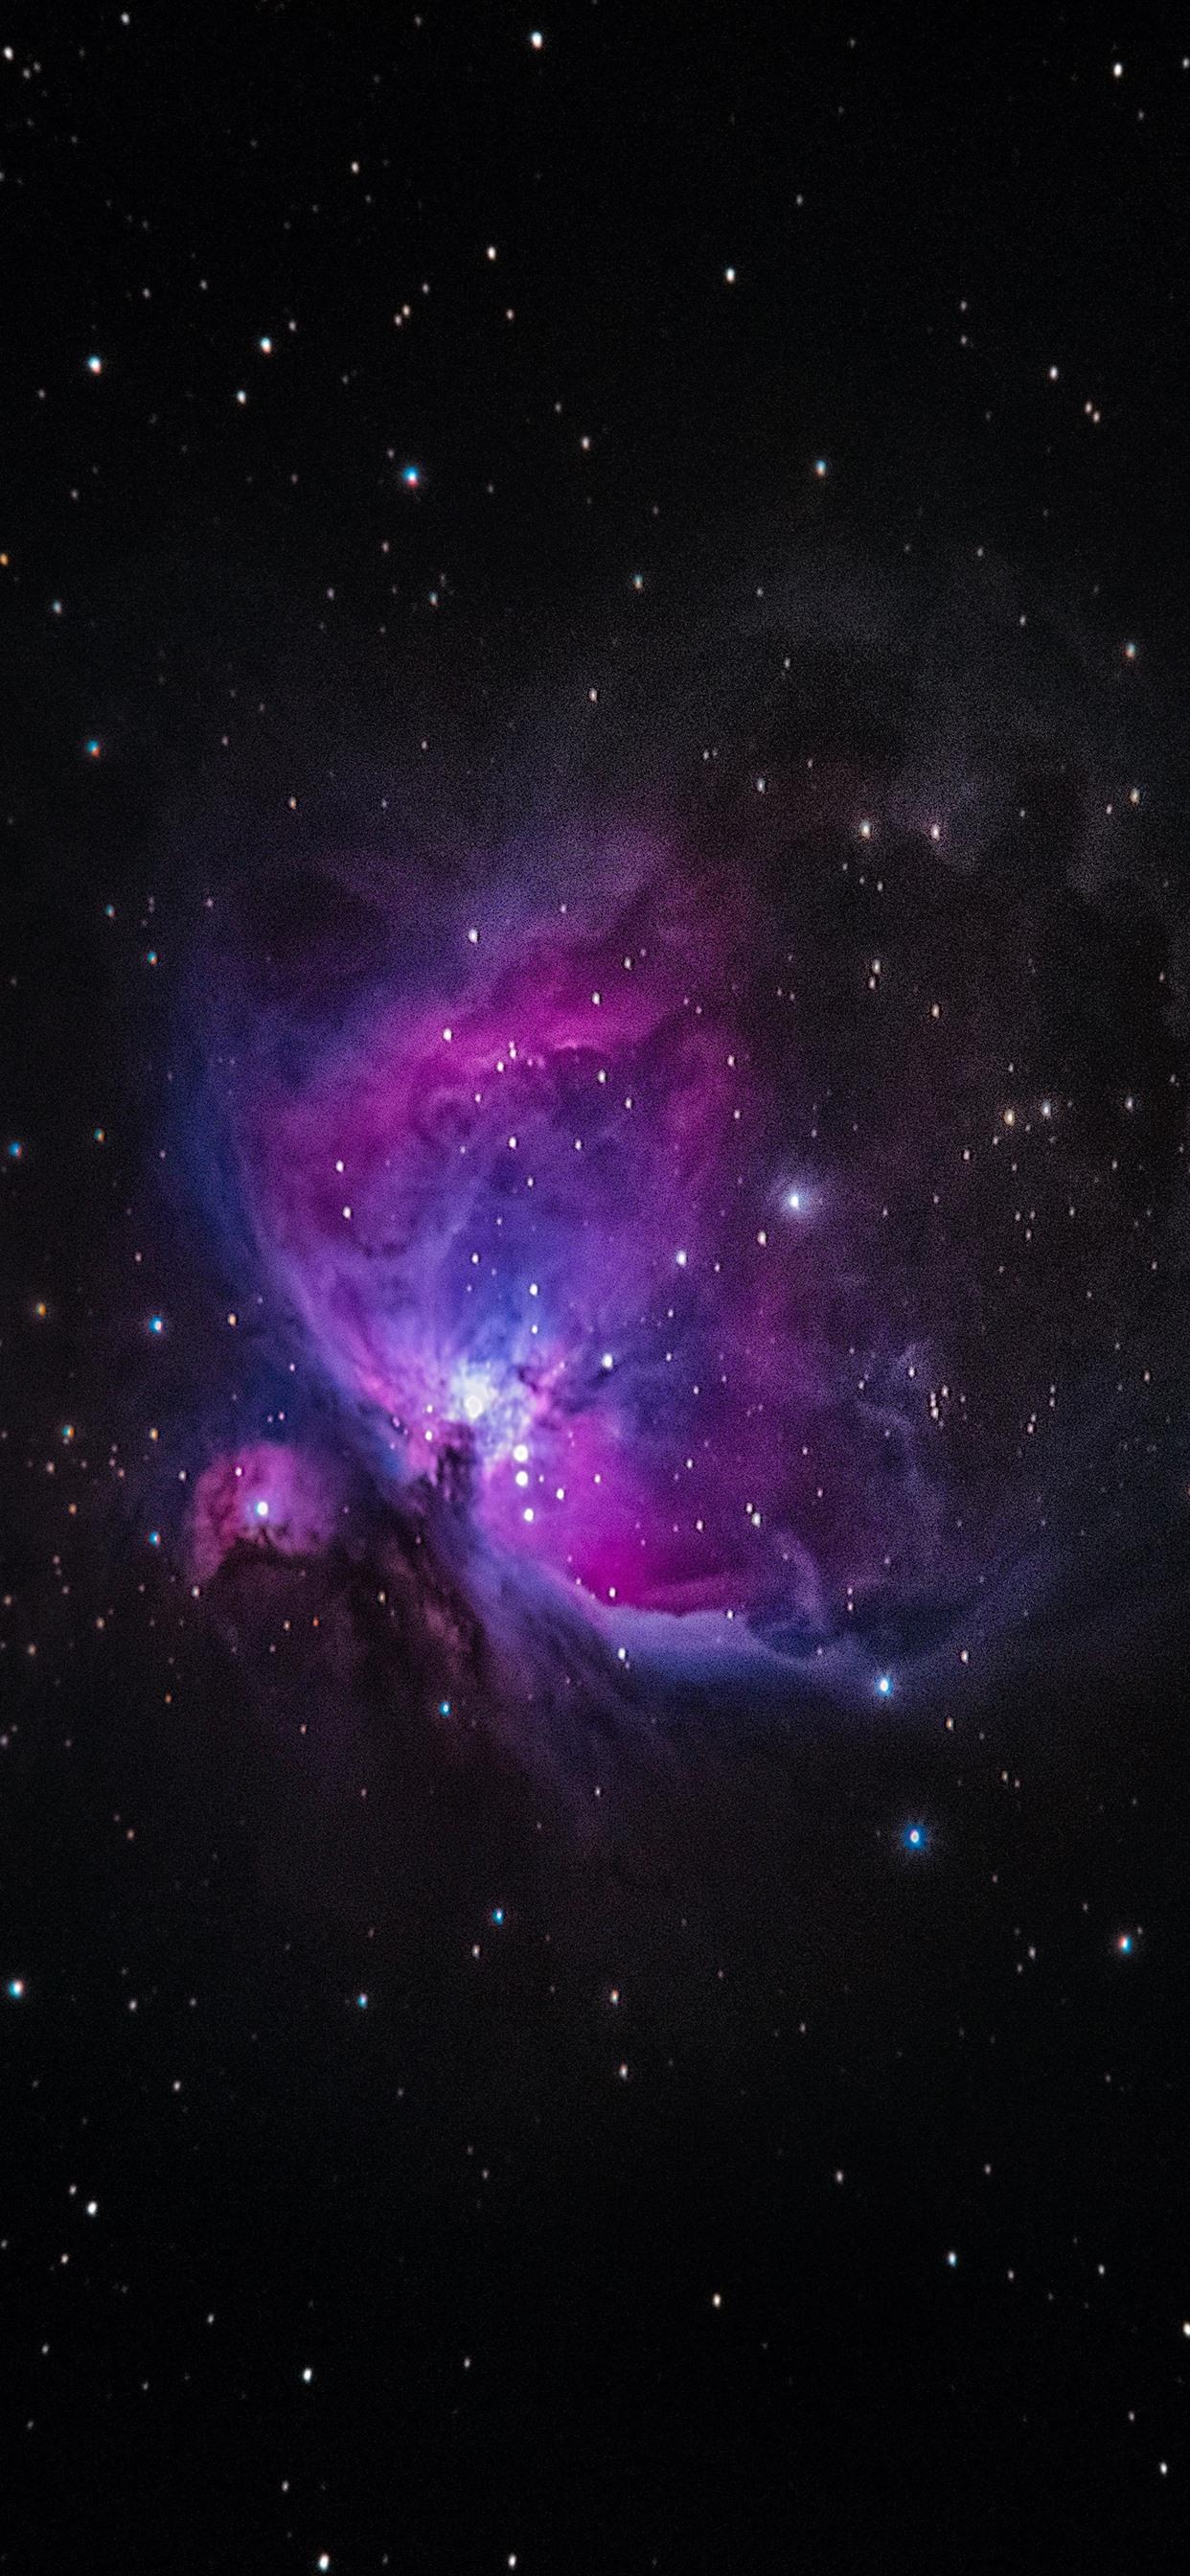 Galaxy, stars, space, purple 1242x2688 iPhone XS Max